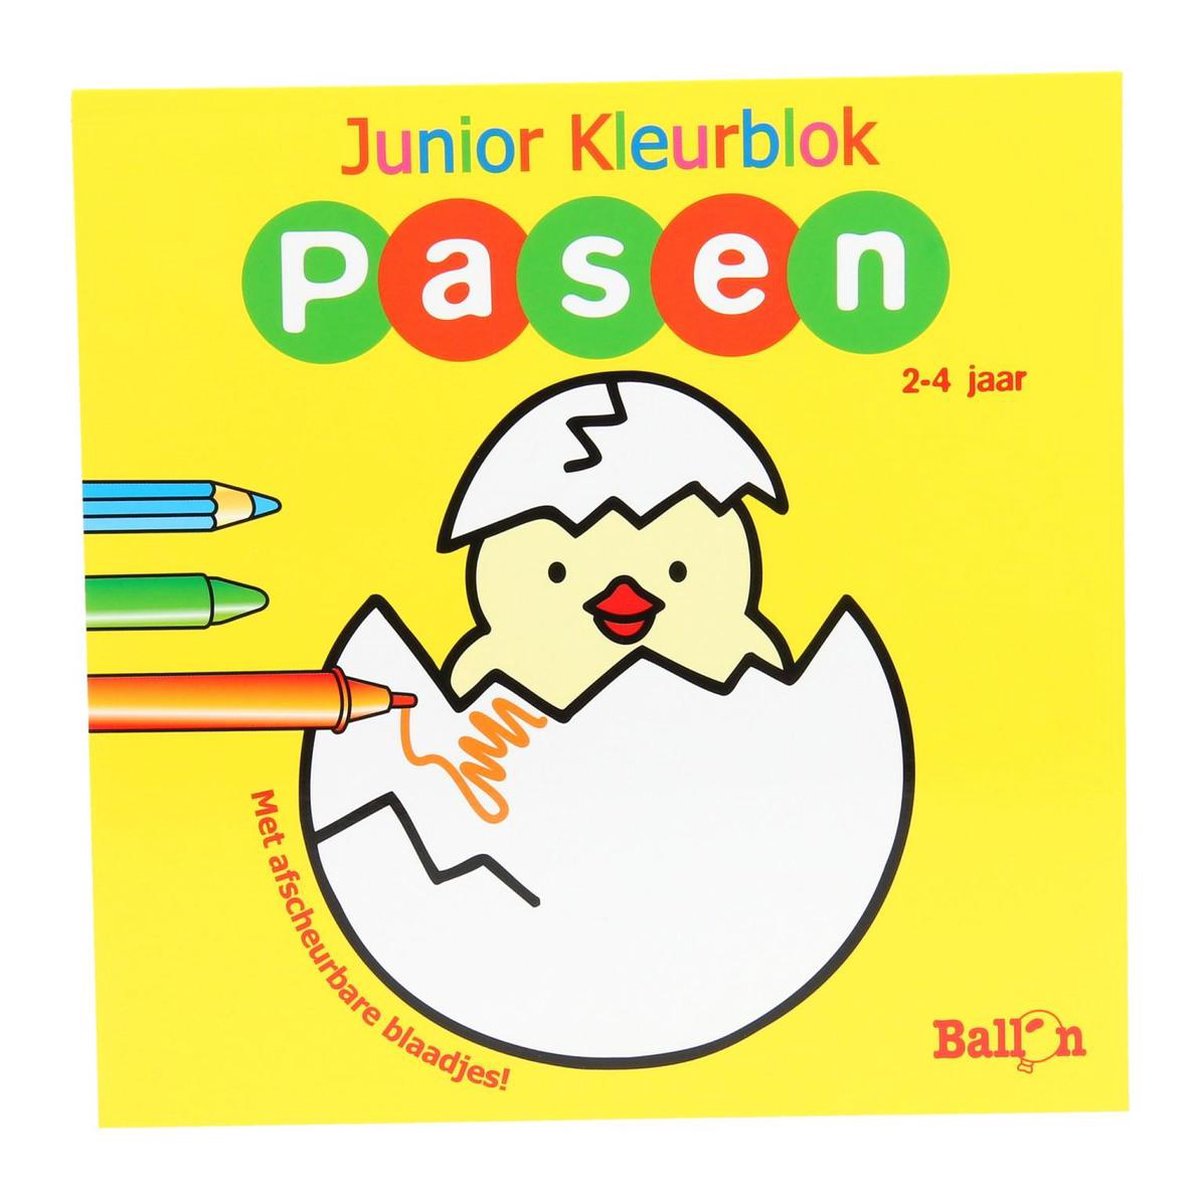 Junior kleurblok (2-4 jaar)